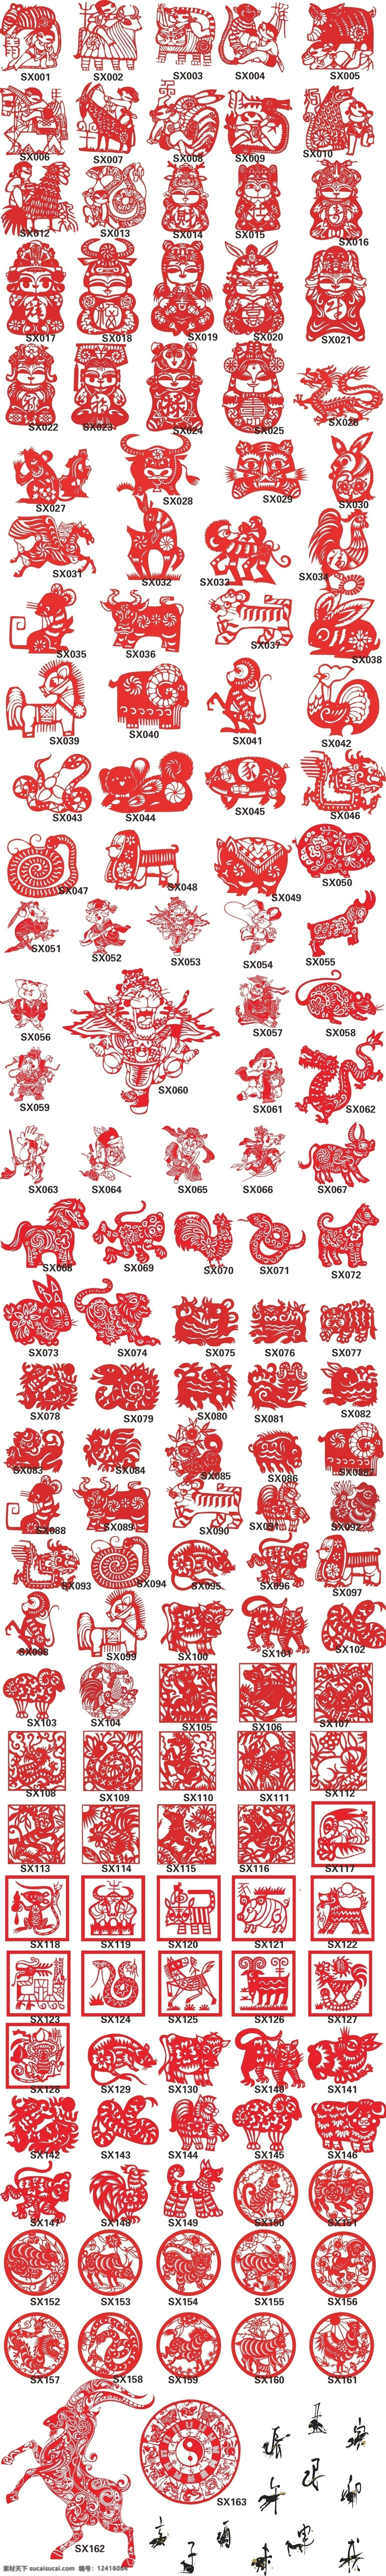 款 十二生肖 剪纸 鼠 牛 虎 兔 龙蛇 马 羊 猴 鸡 狗 猪 中国民间艺术 中国传统艺术 白色